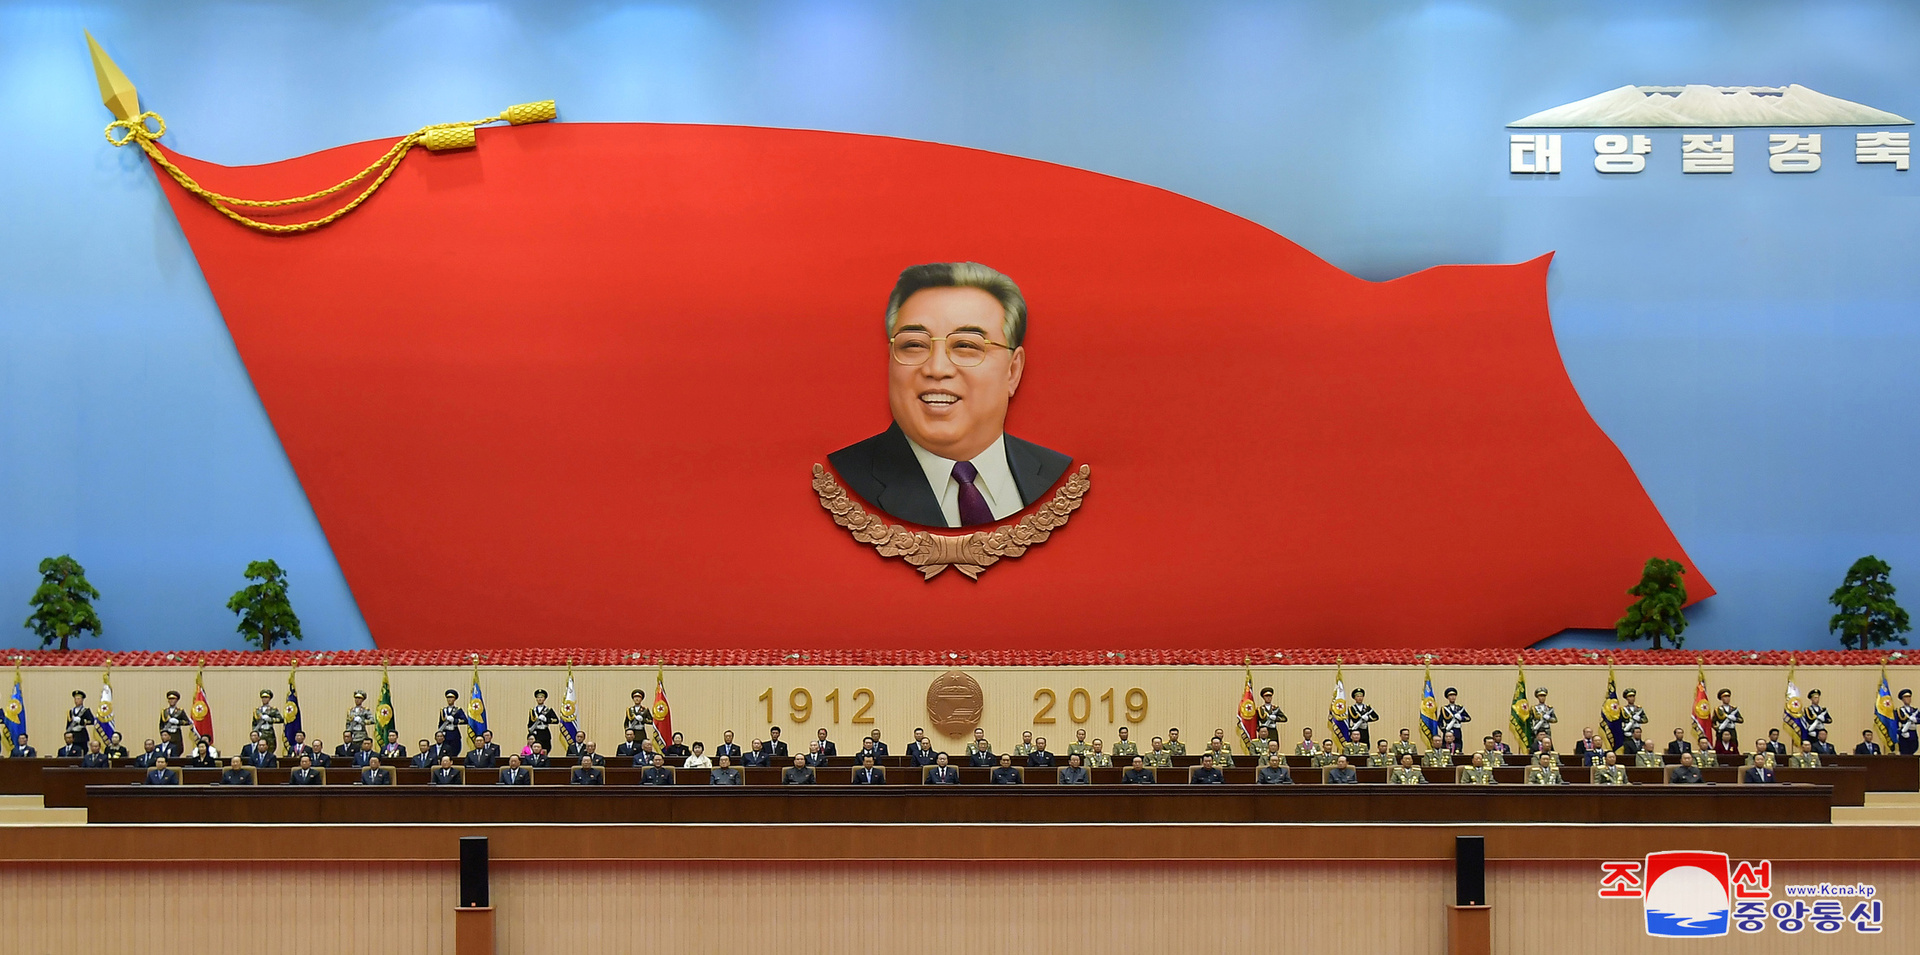 وزارة الوحدة الكورية الجنوبية تحقق في كيفية ظهور مذكرات مؤسس كوريا الشمالية في مكتبات البلاد